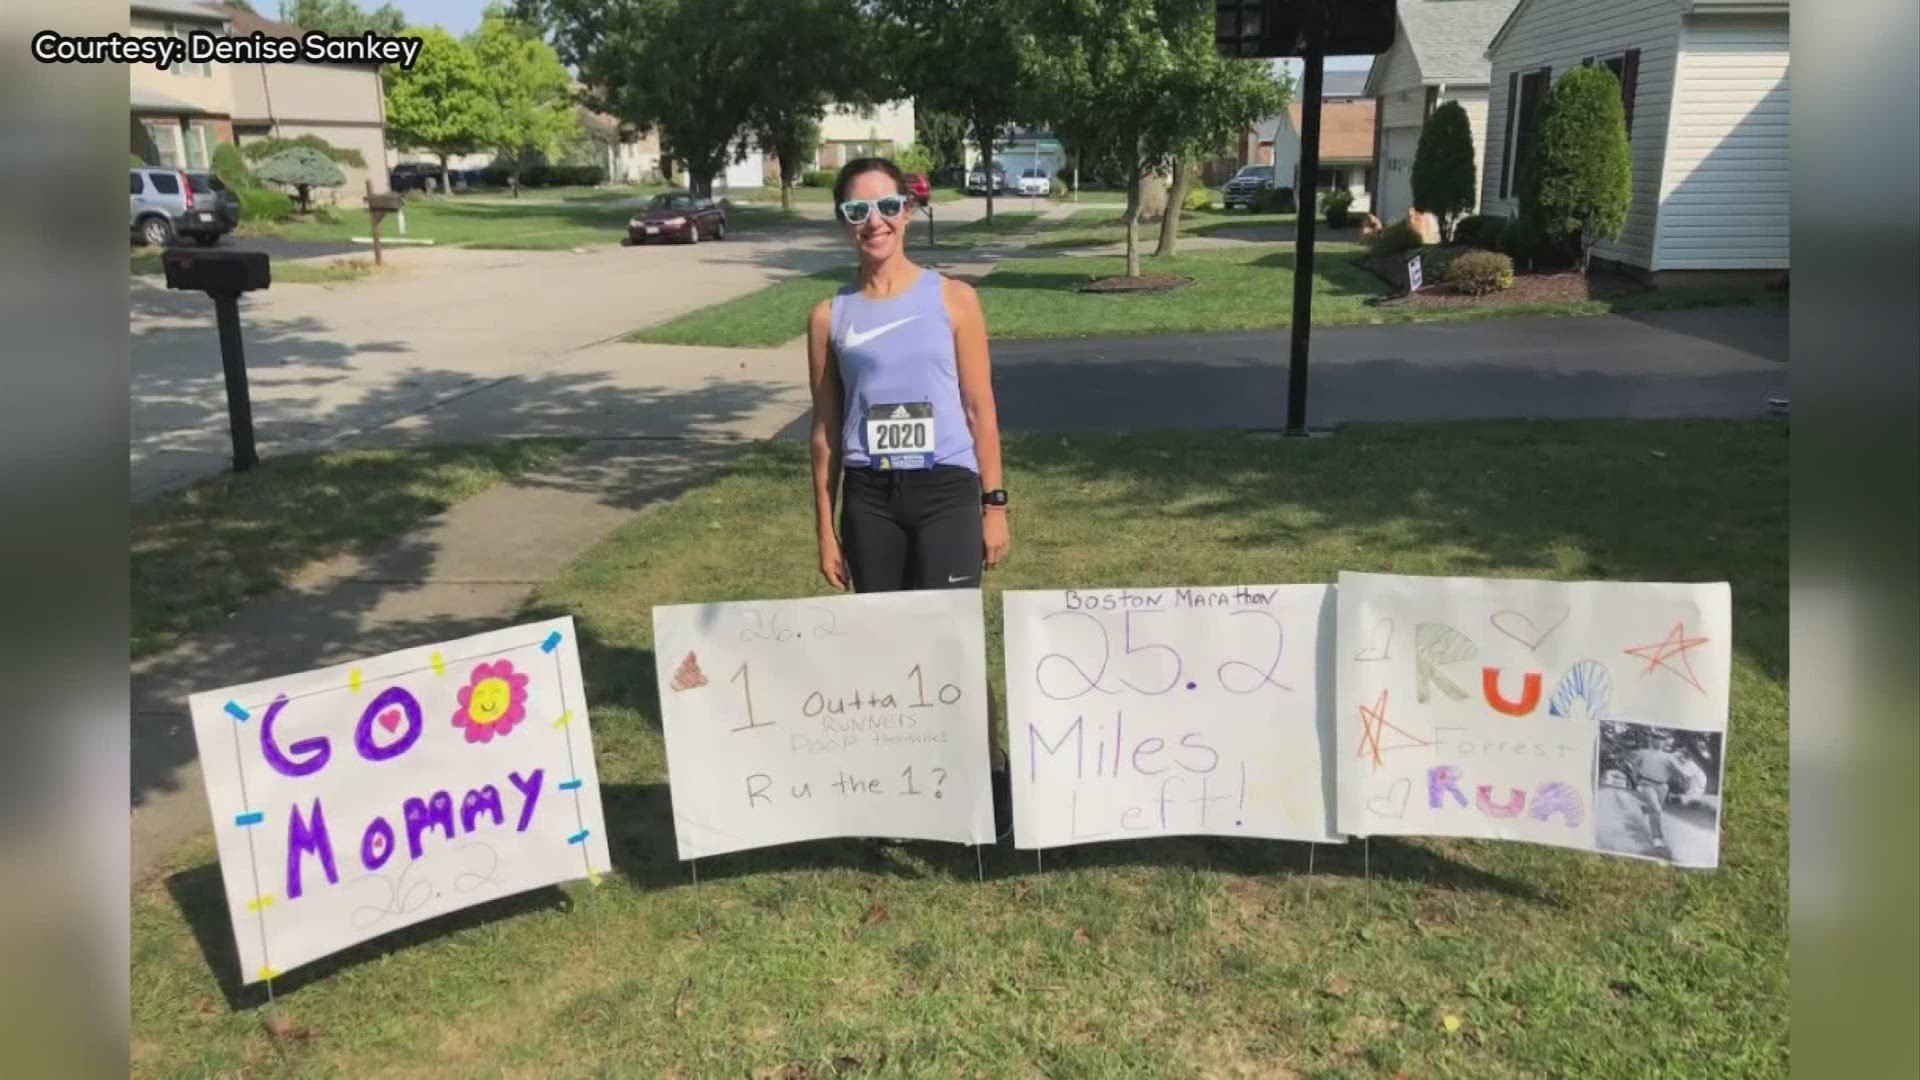 A local woman ran a virtual marathon in place of the Boston Marathon.